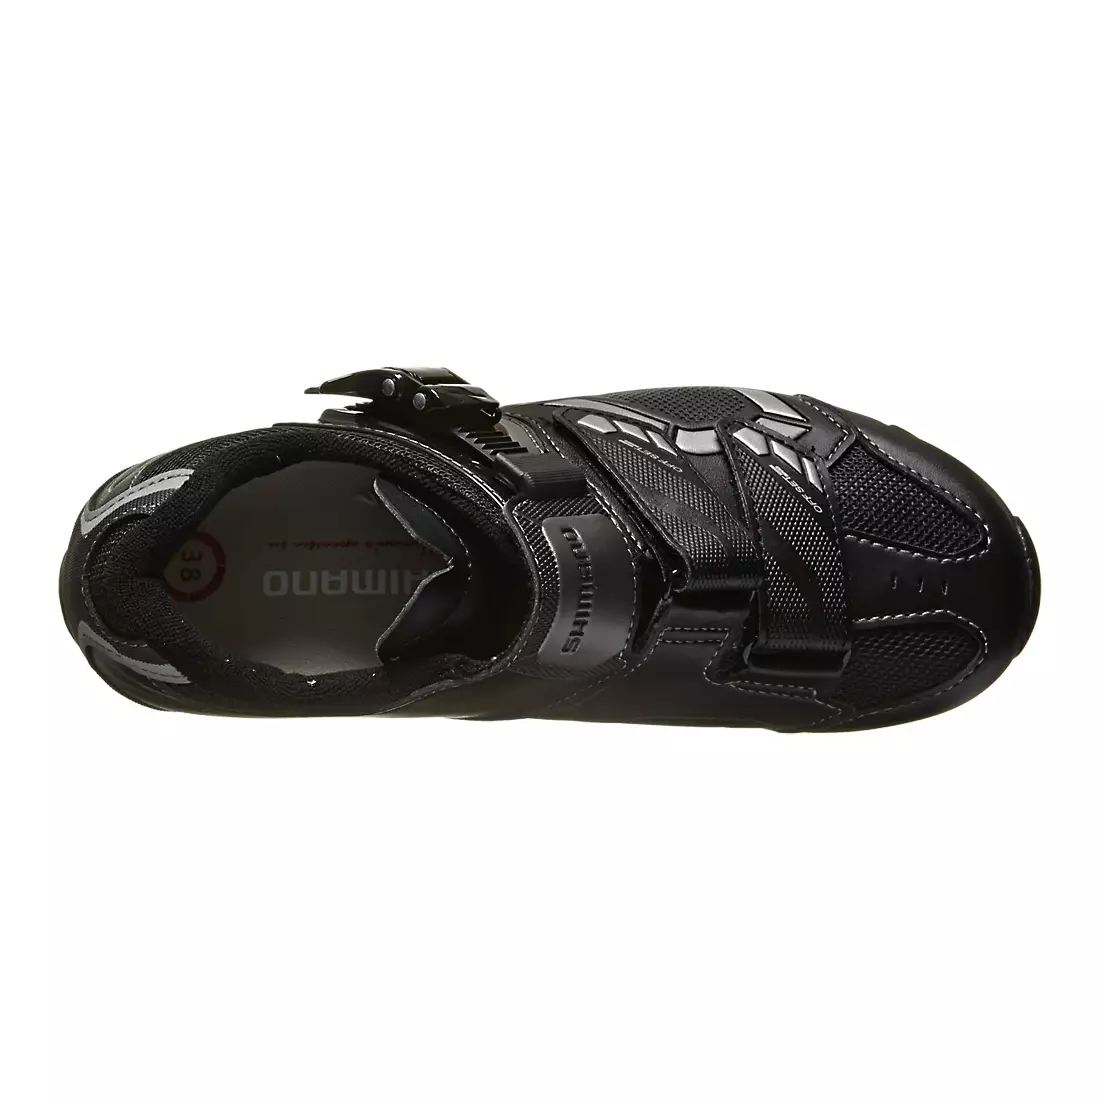 SHIMANO SH-WM63 - dámska cyklistická obuv, farba: čierna